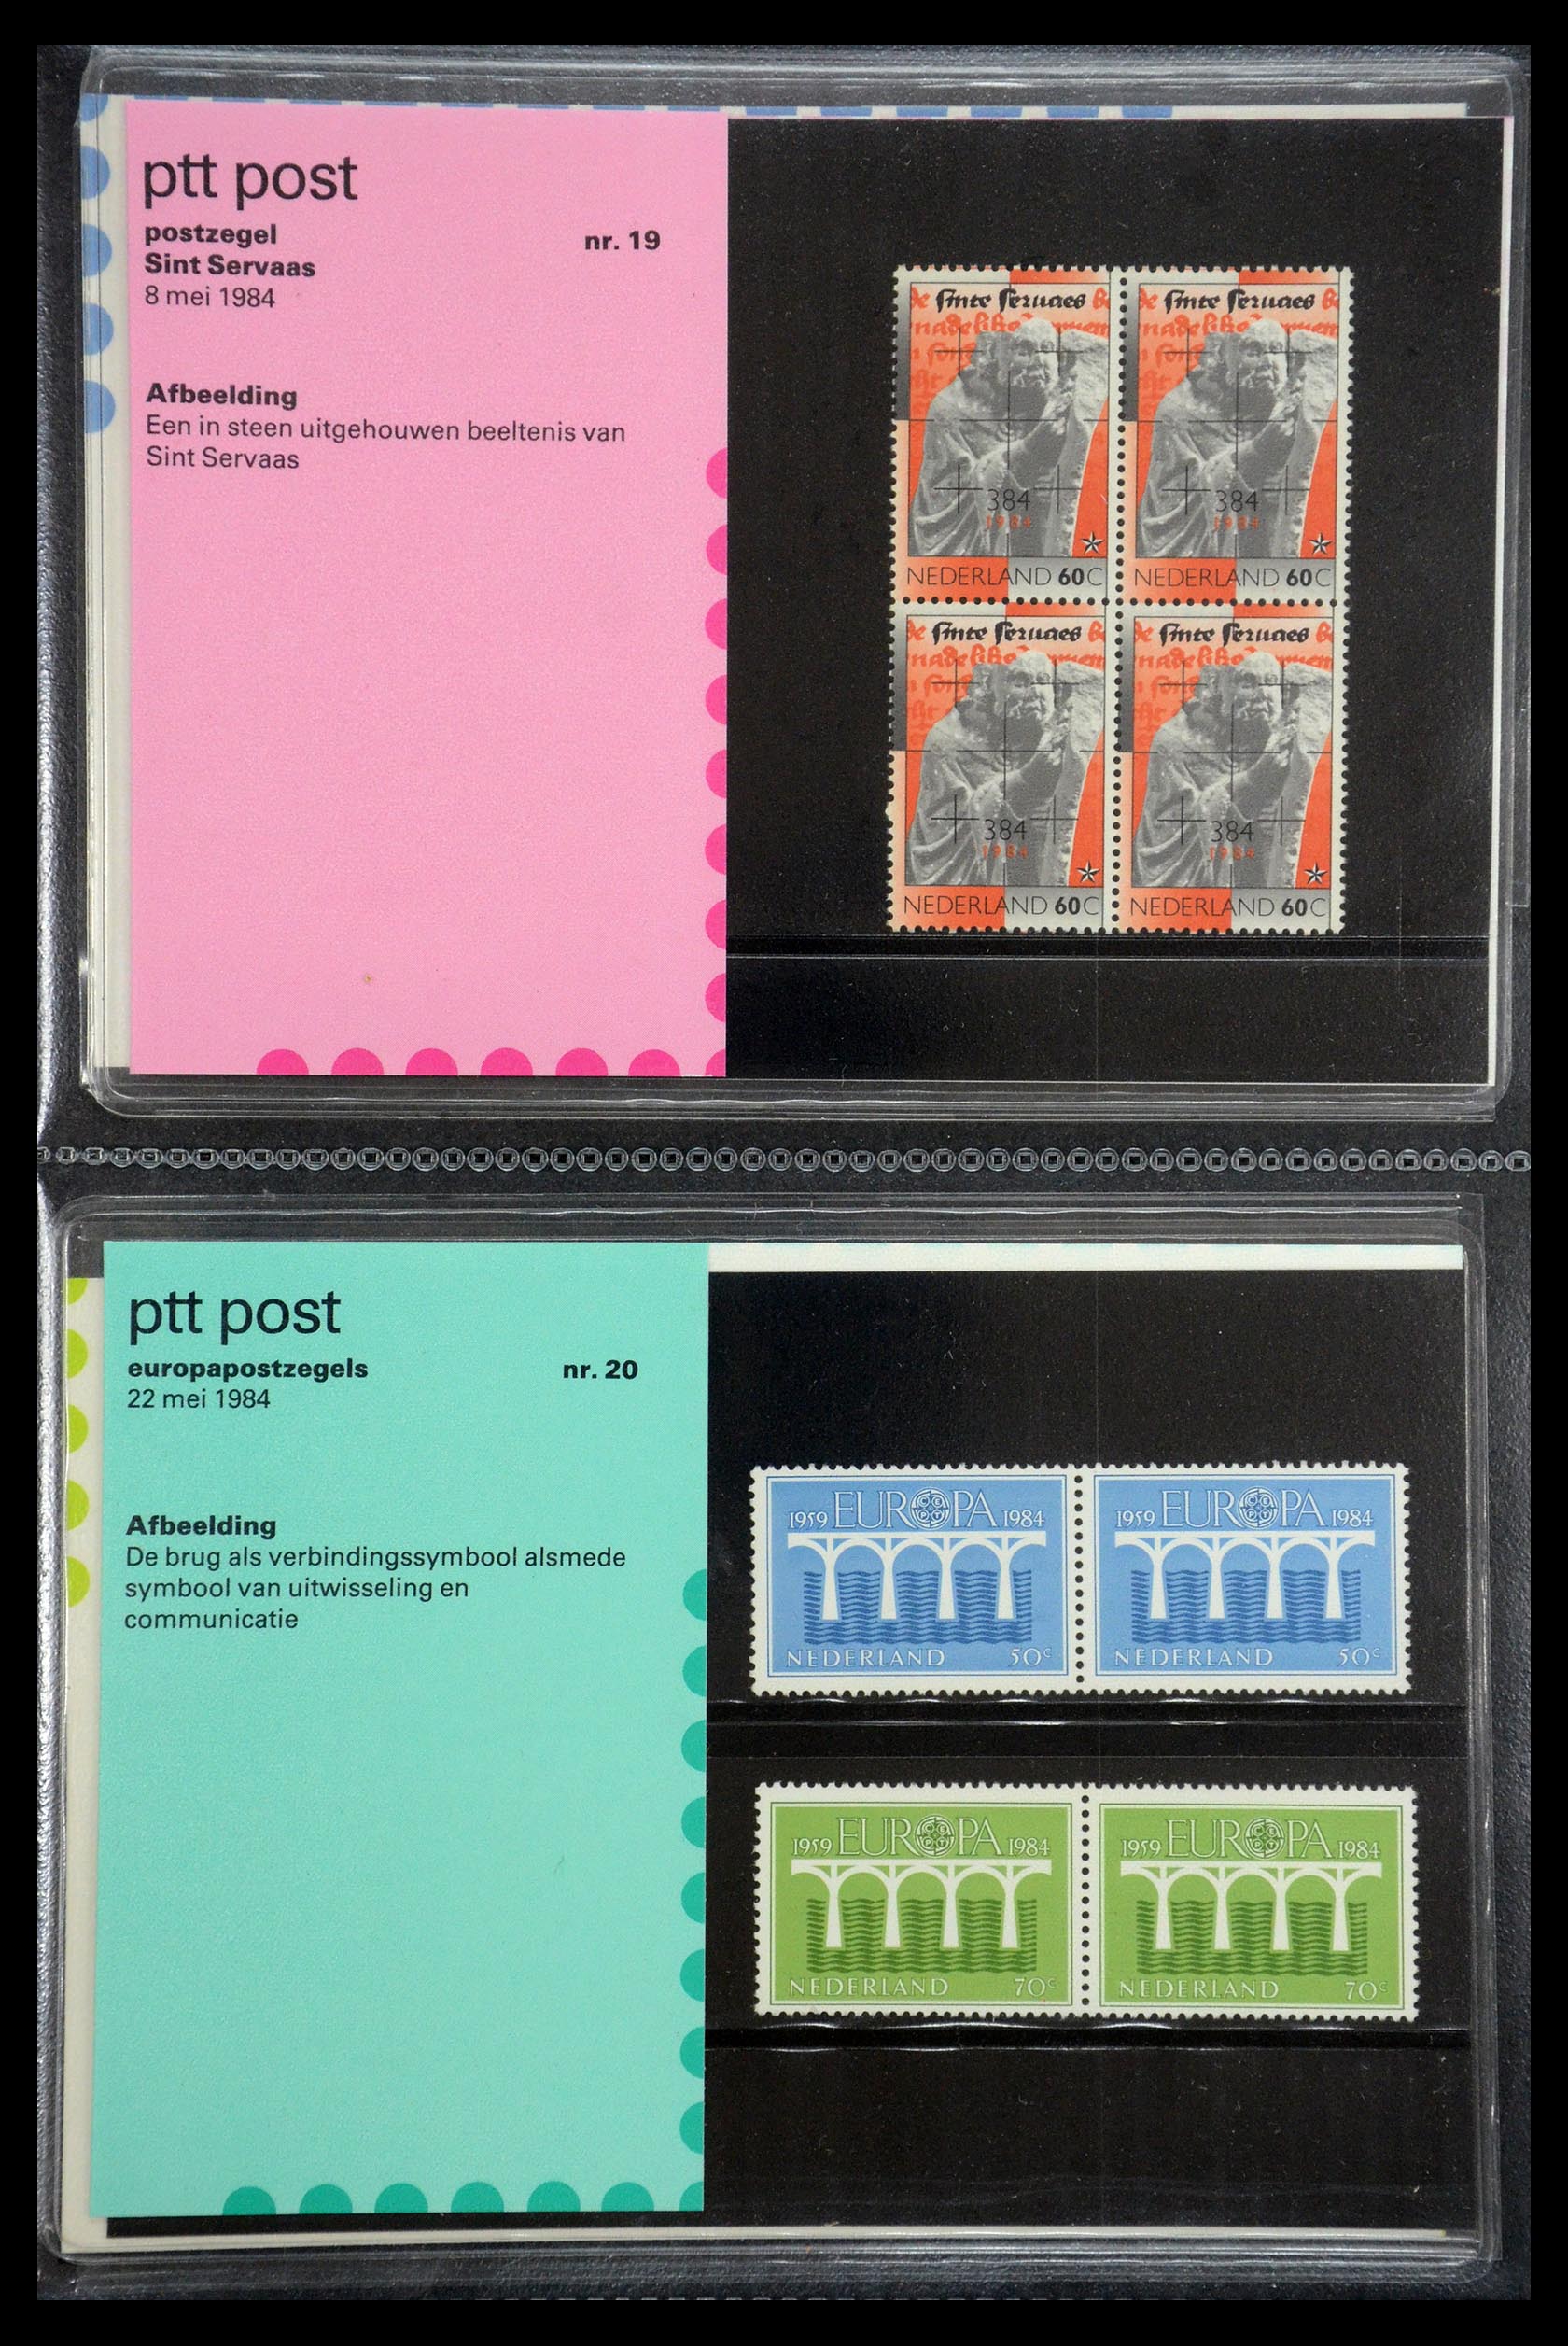 35187 010 - Stamp Collection 35187 Netherlands PTT presentation packs 1982-2019!